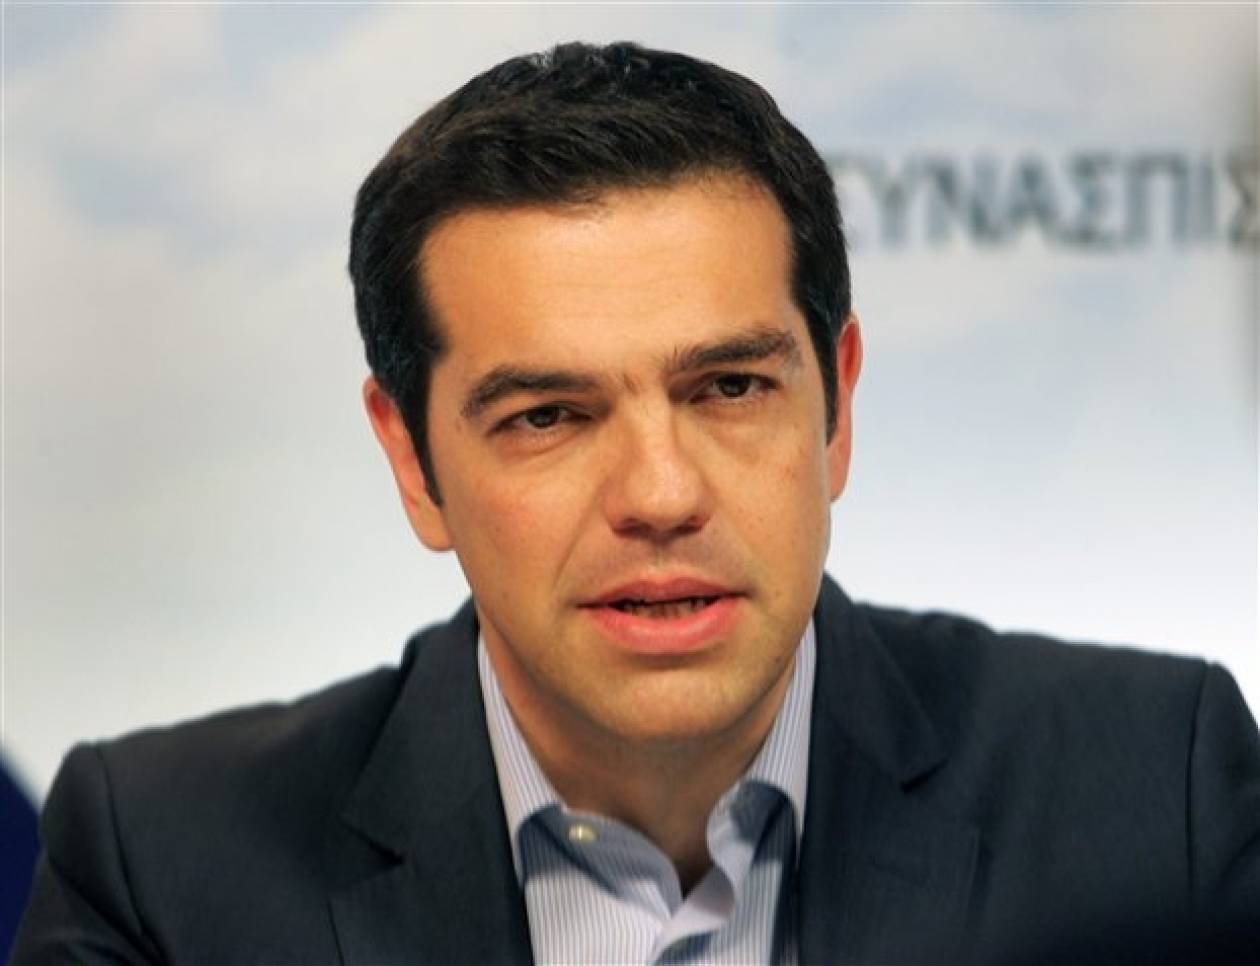 ΣΥΡΙΖΑ: Ο κ. Σαμαράς δεν έχει πλέον να «εξαγγείλει» τίποτα